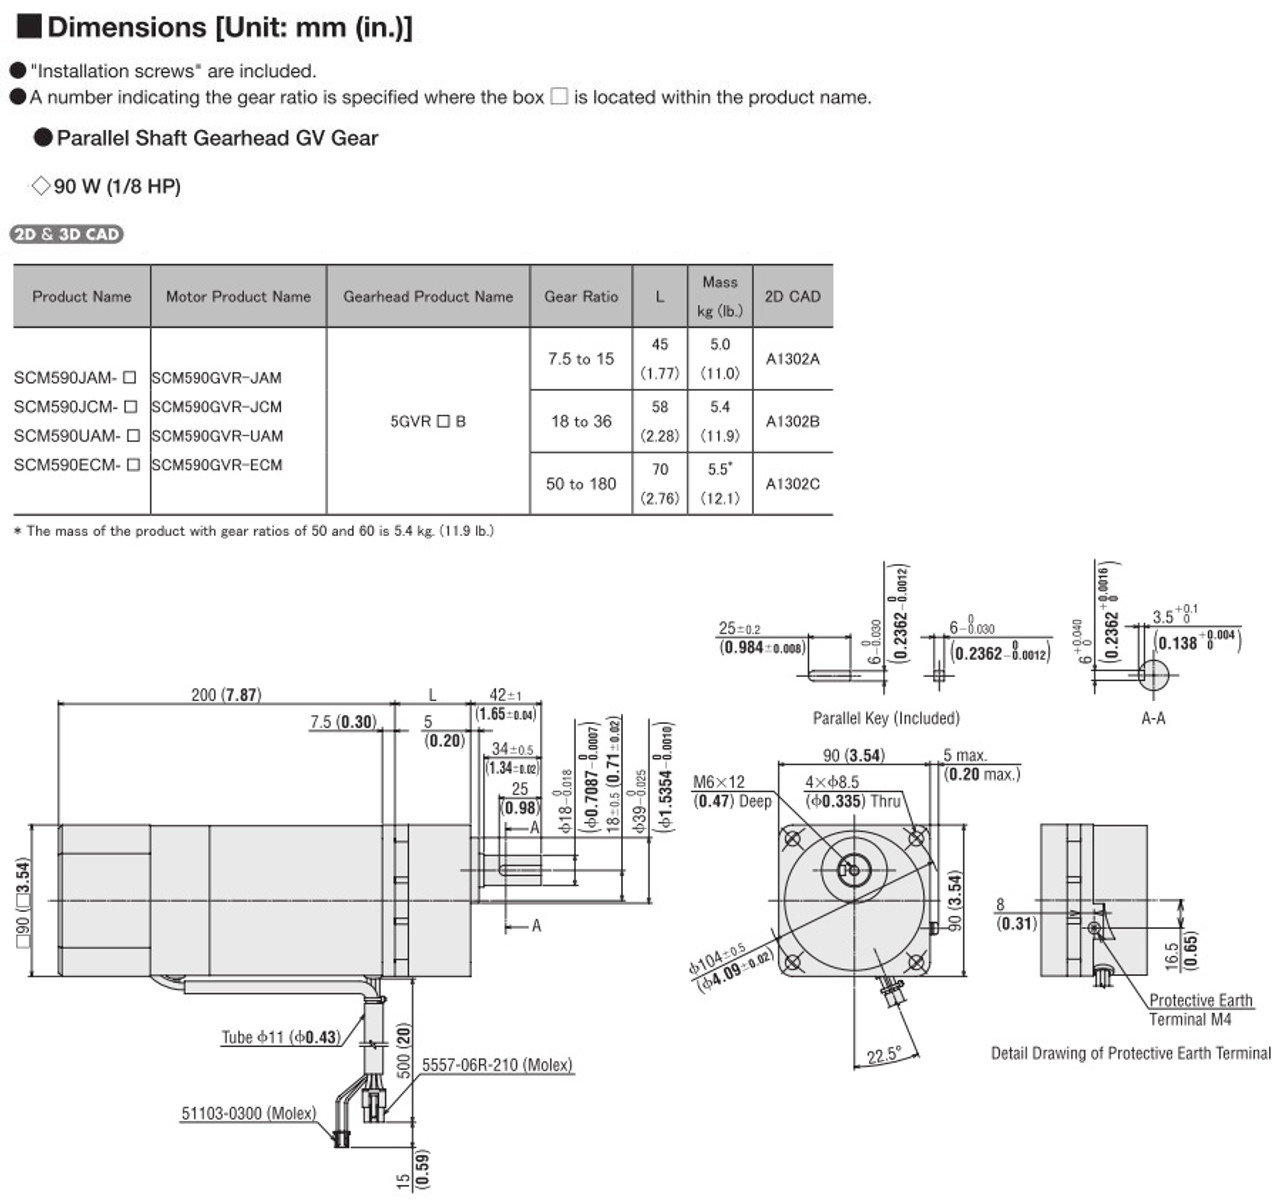 SCM590ECM-75 - Dimensions